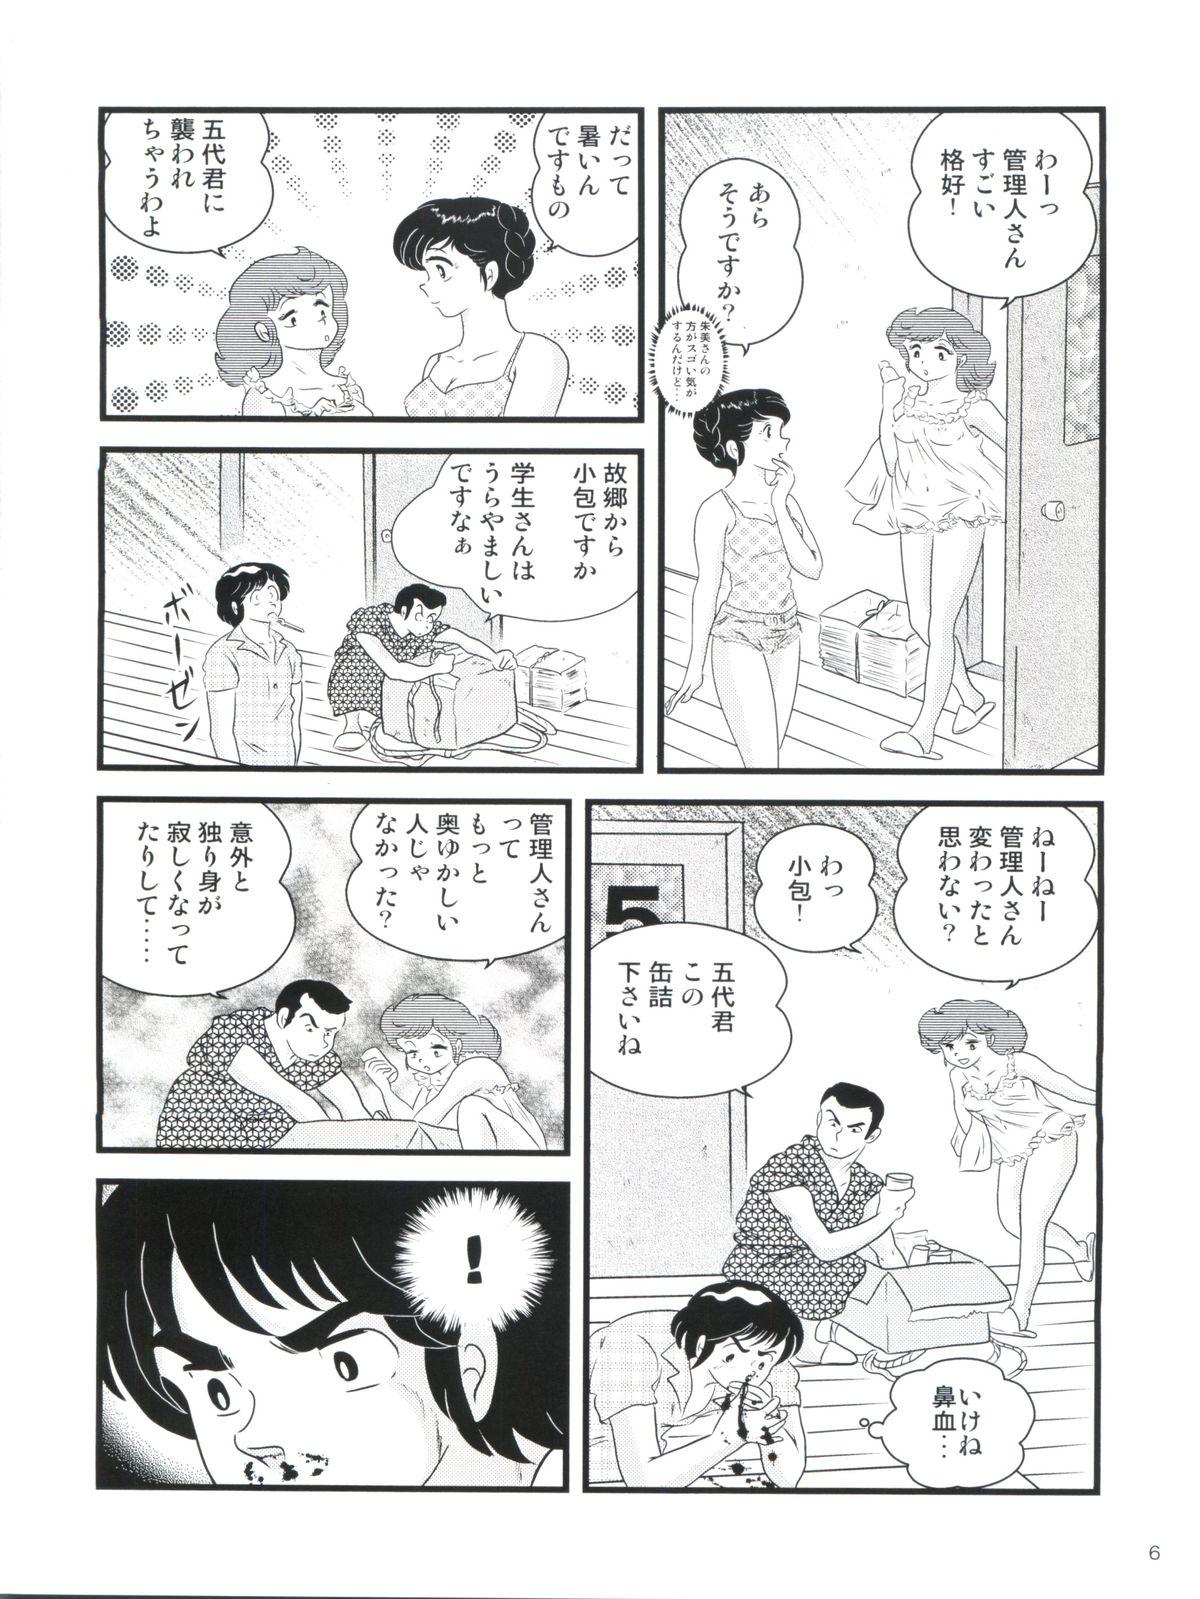 Amatures Gone Wild Fairy 14 - Maison ikkoku Sensual - Page 10